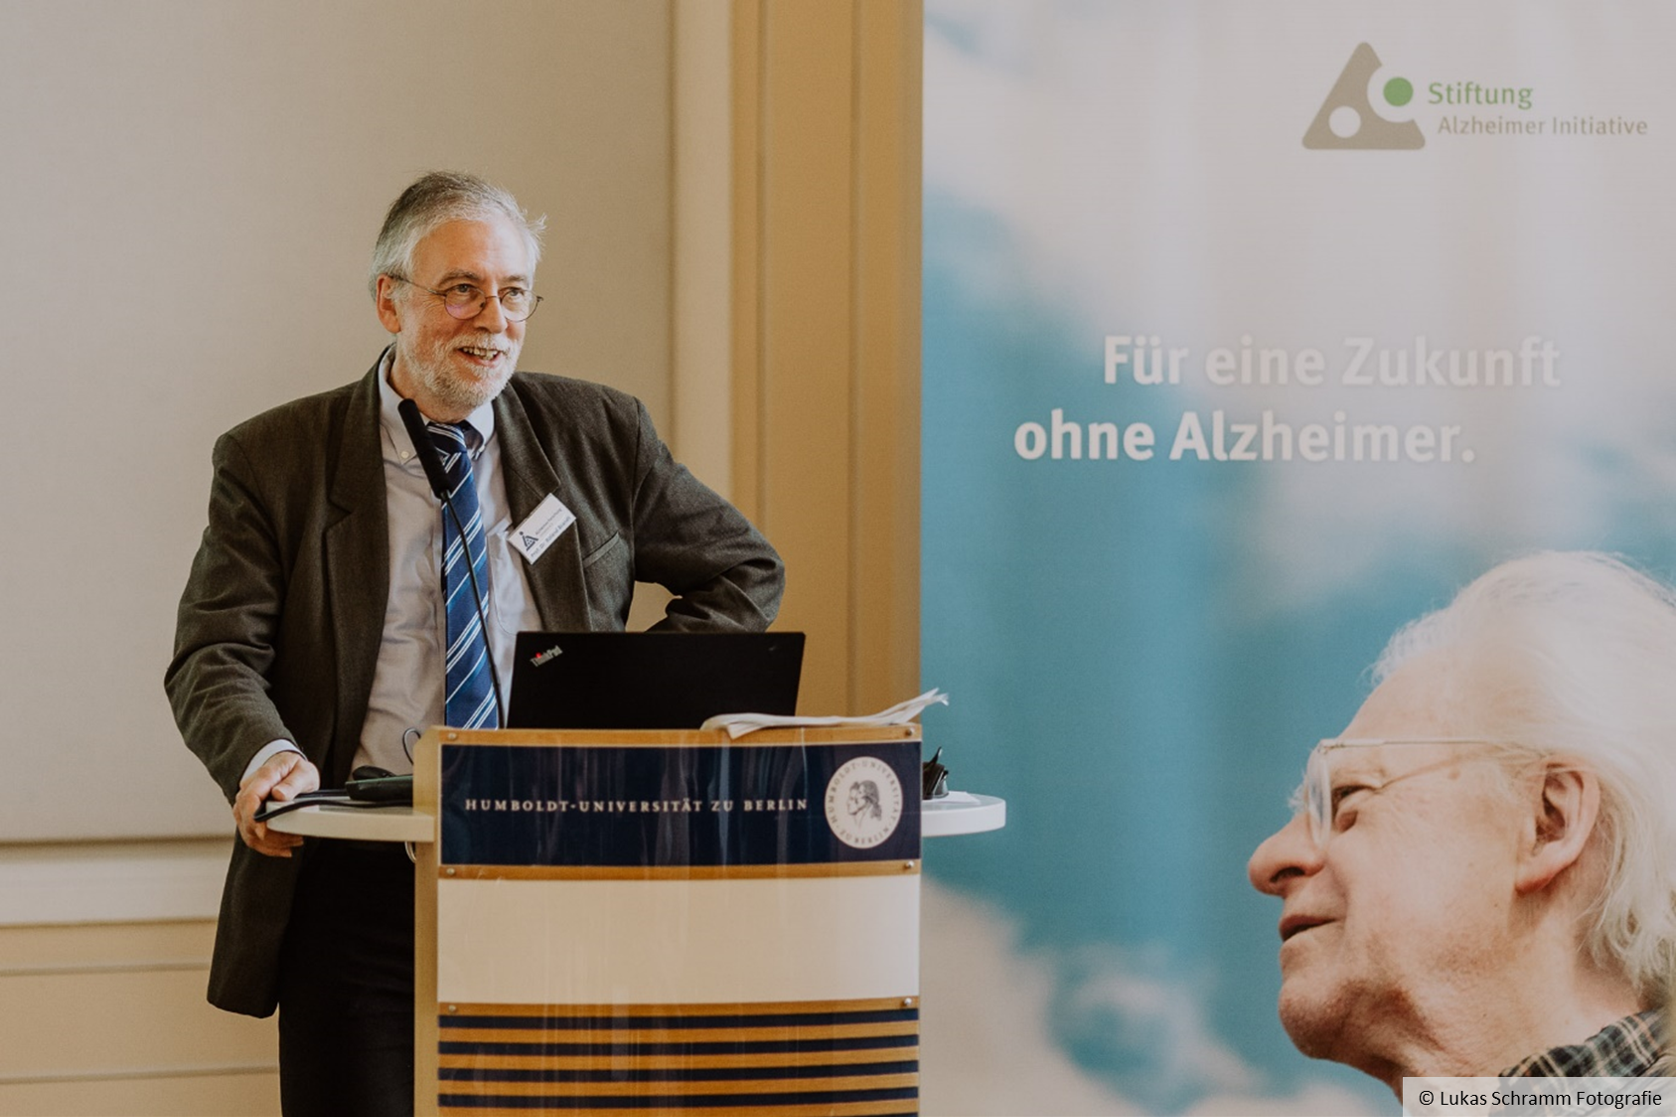 Roland Brandt stands at a lectern, next to him is a poster with the words ‘Für eine Zukunft ohne Alzheimer’.